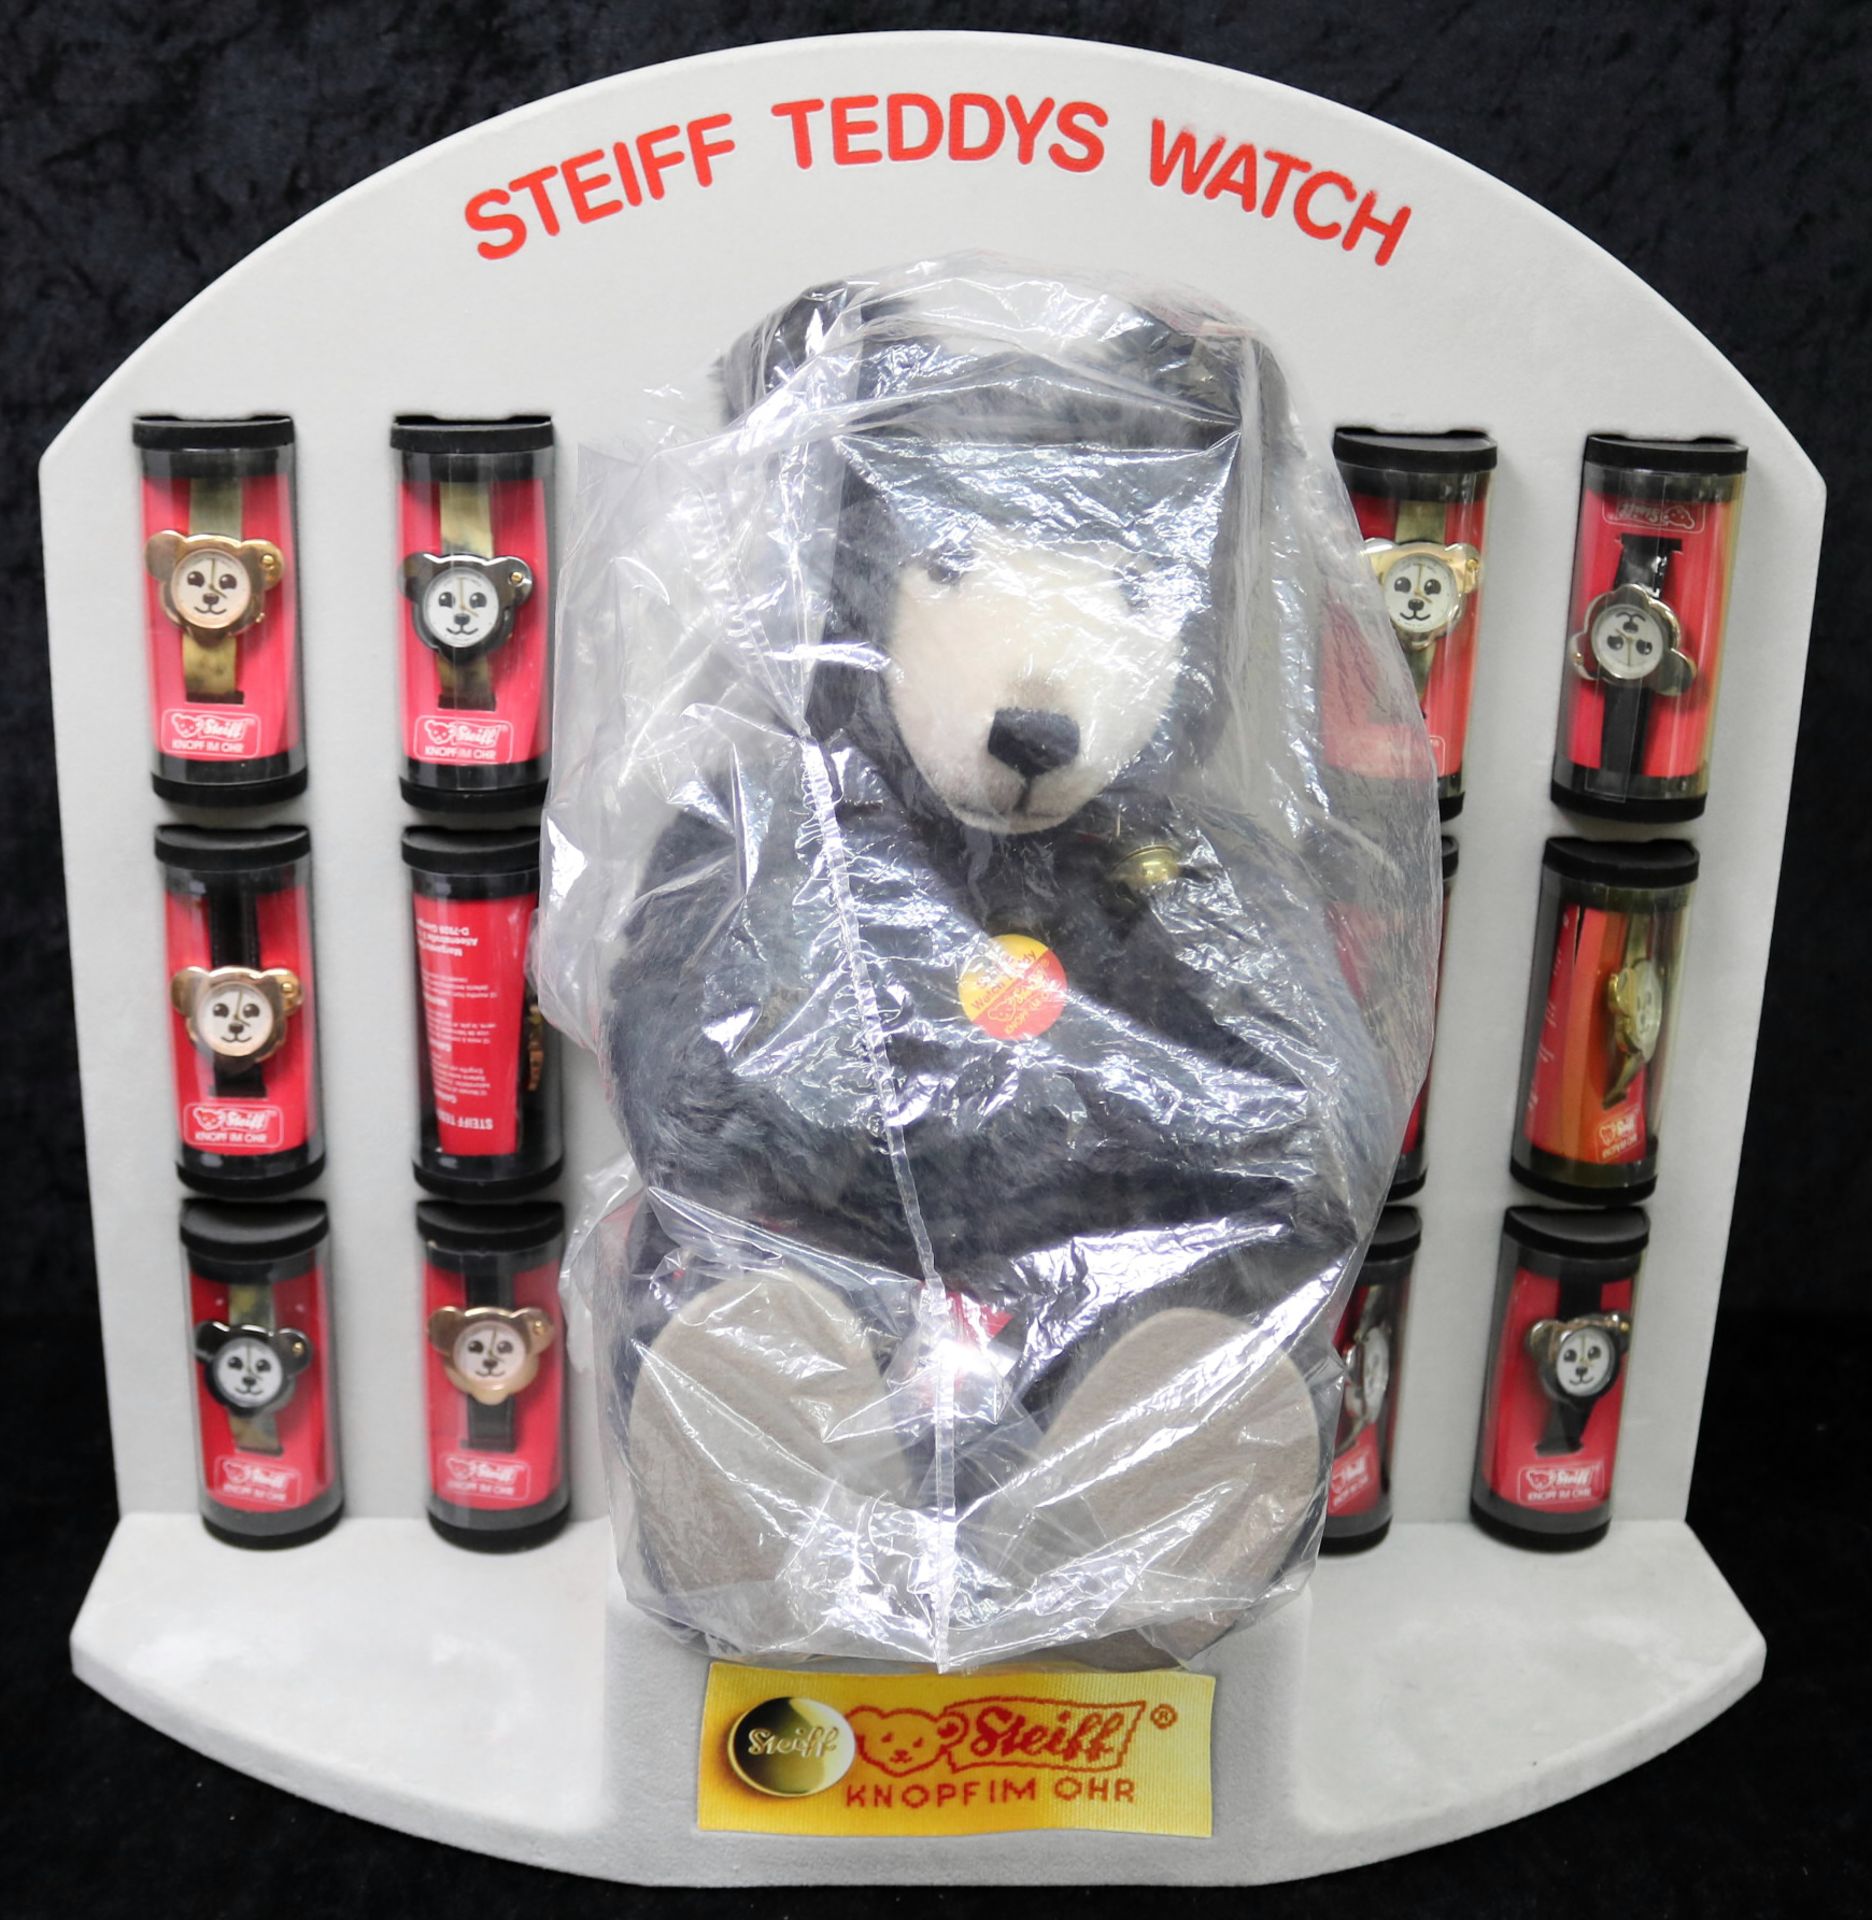 Steiff Watch Teddy mit 13 Steiff-Uhren in originalem Display, 1992, unbespielter Original-Zustand - Image 2 of 4